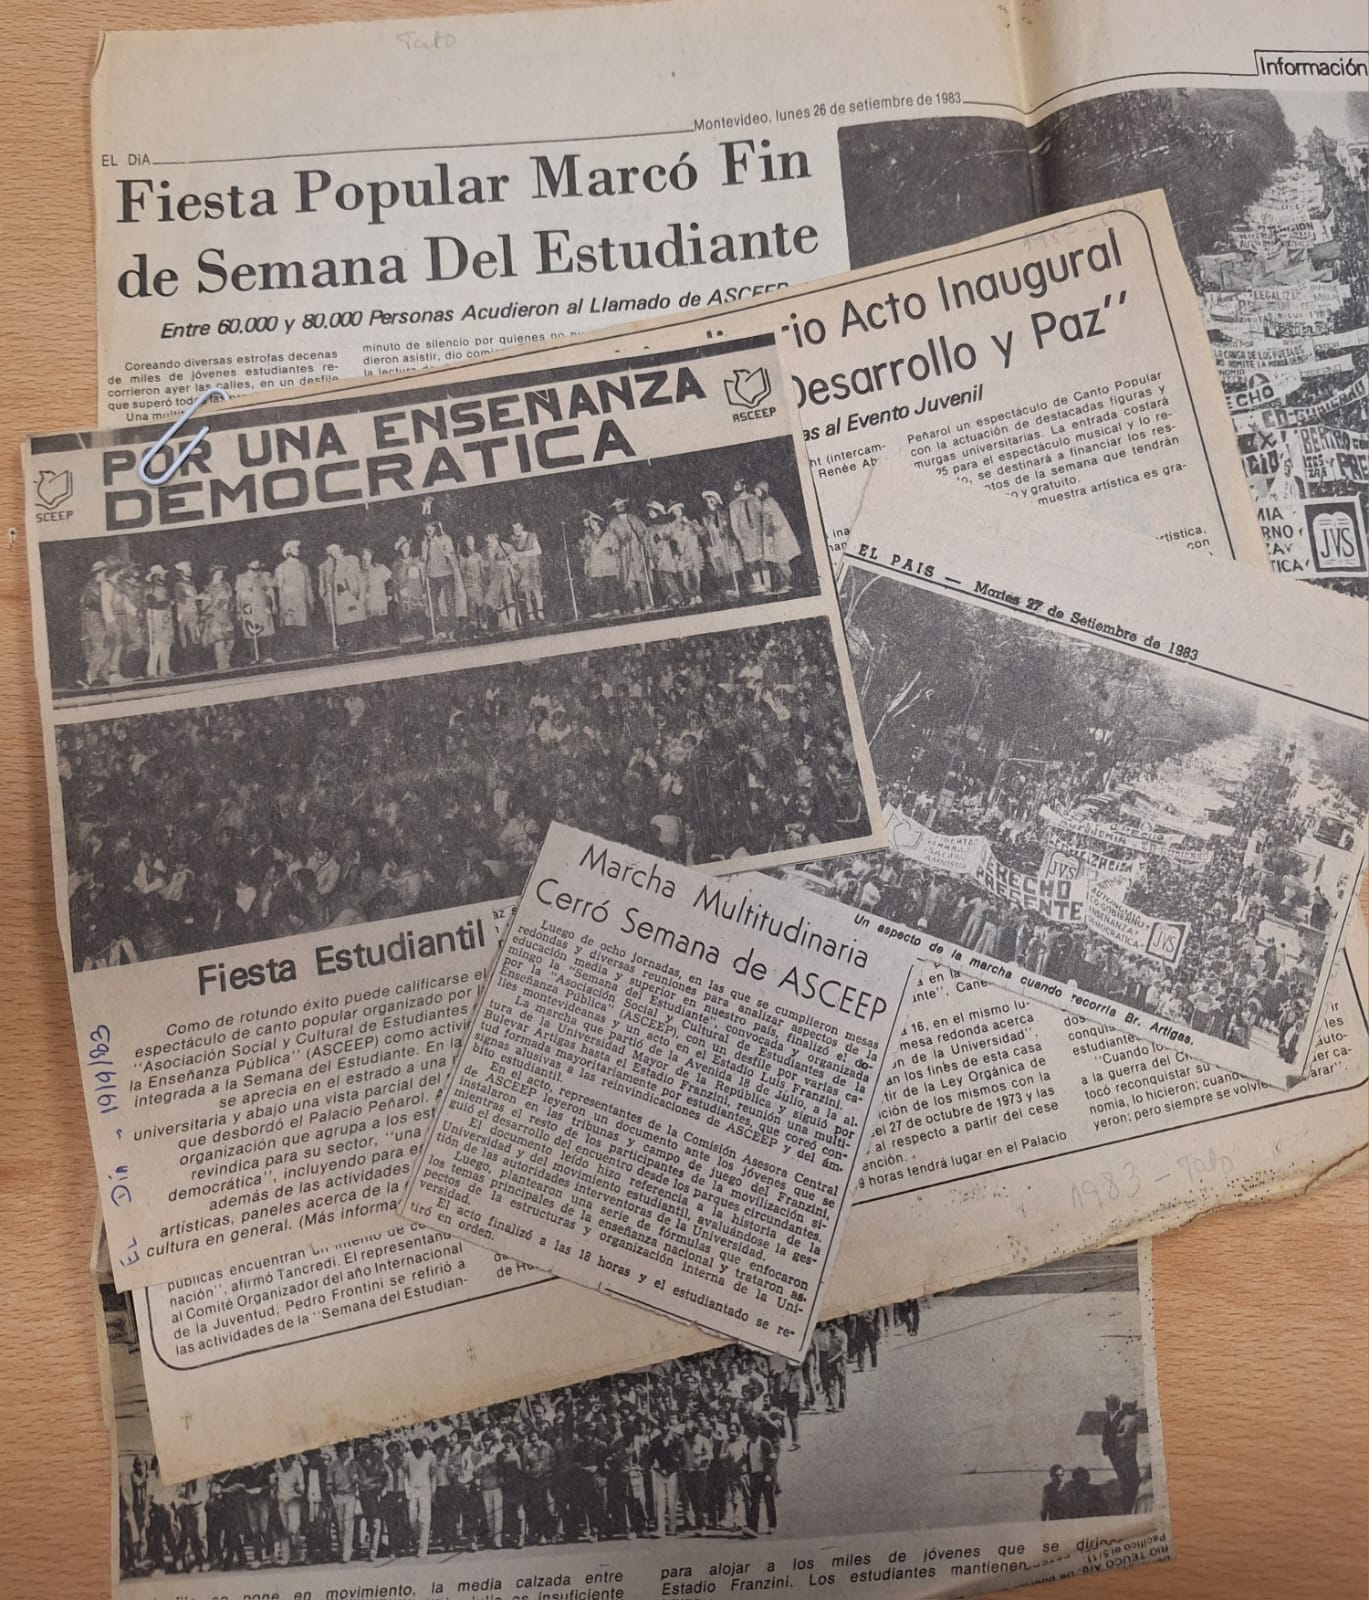 Recortes de prensa sobre la marcha del 25 de setiembre de 1983, Montevideo, setiembre de 1983, AGU, Archivos Privados, Generación 83’, caja 3.